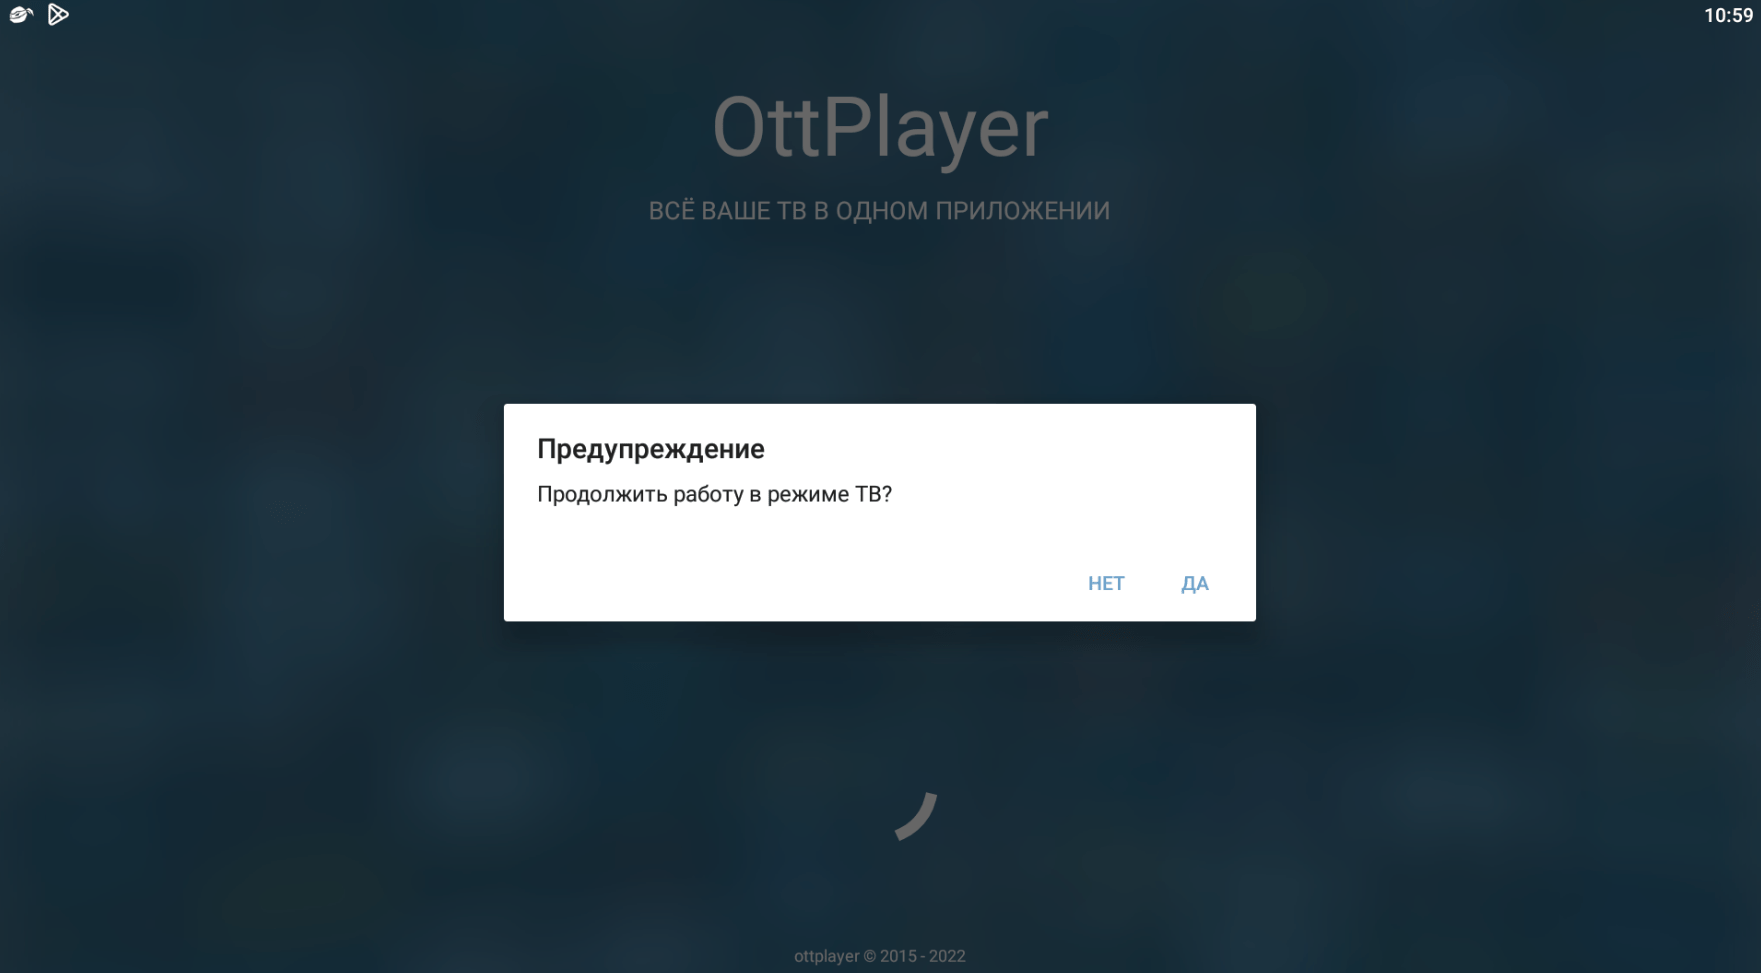 OttPlayer первый запуск